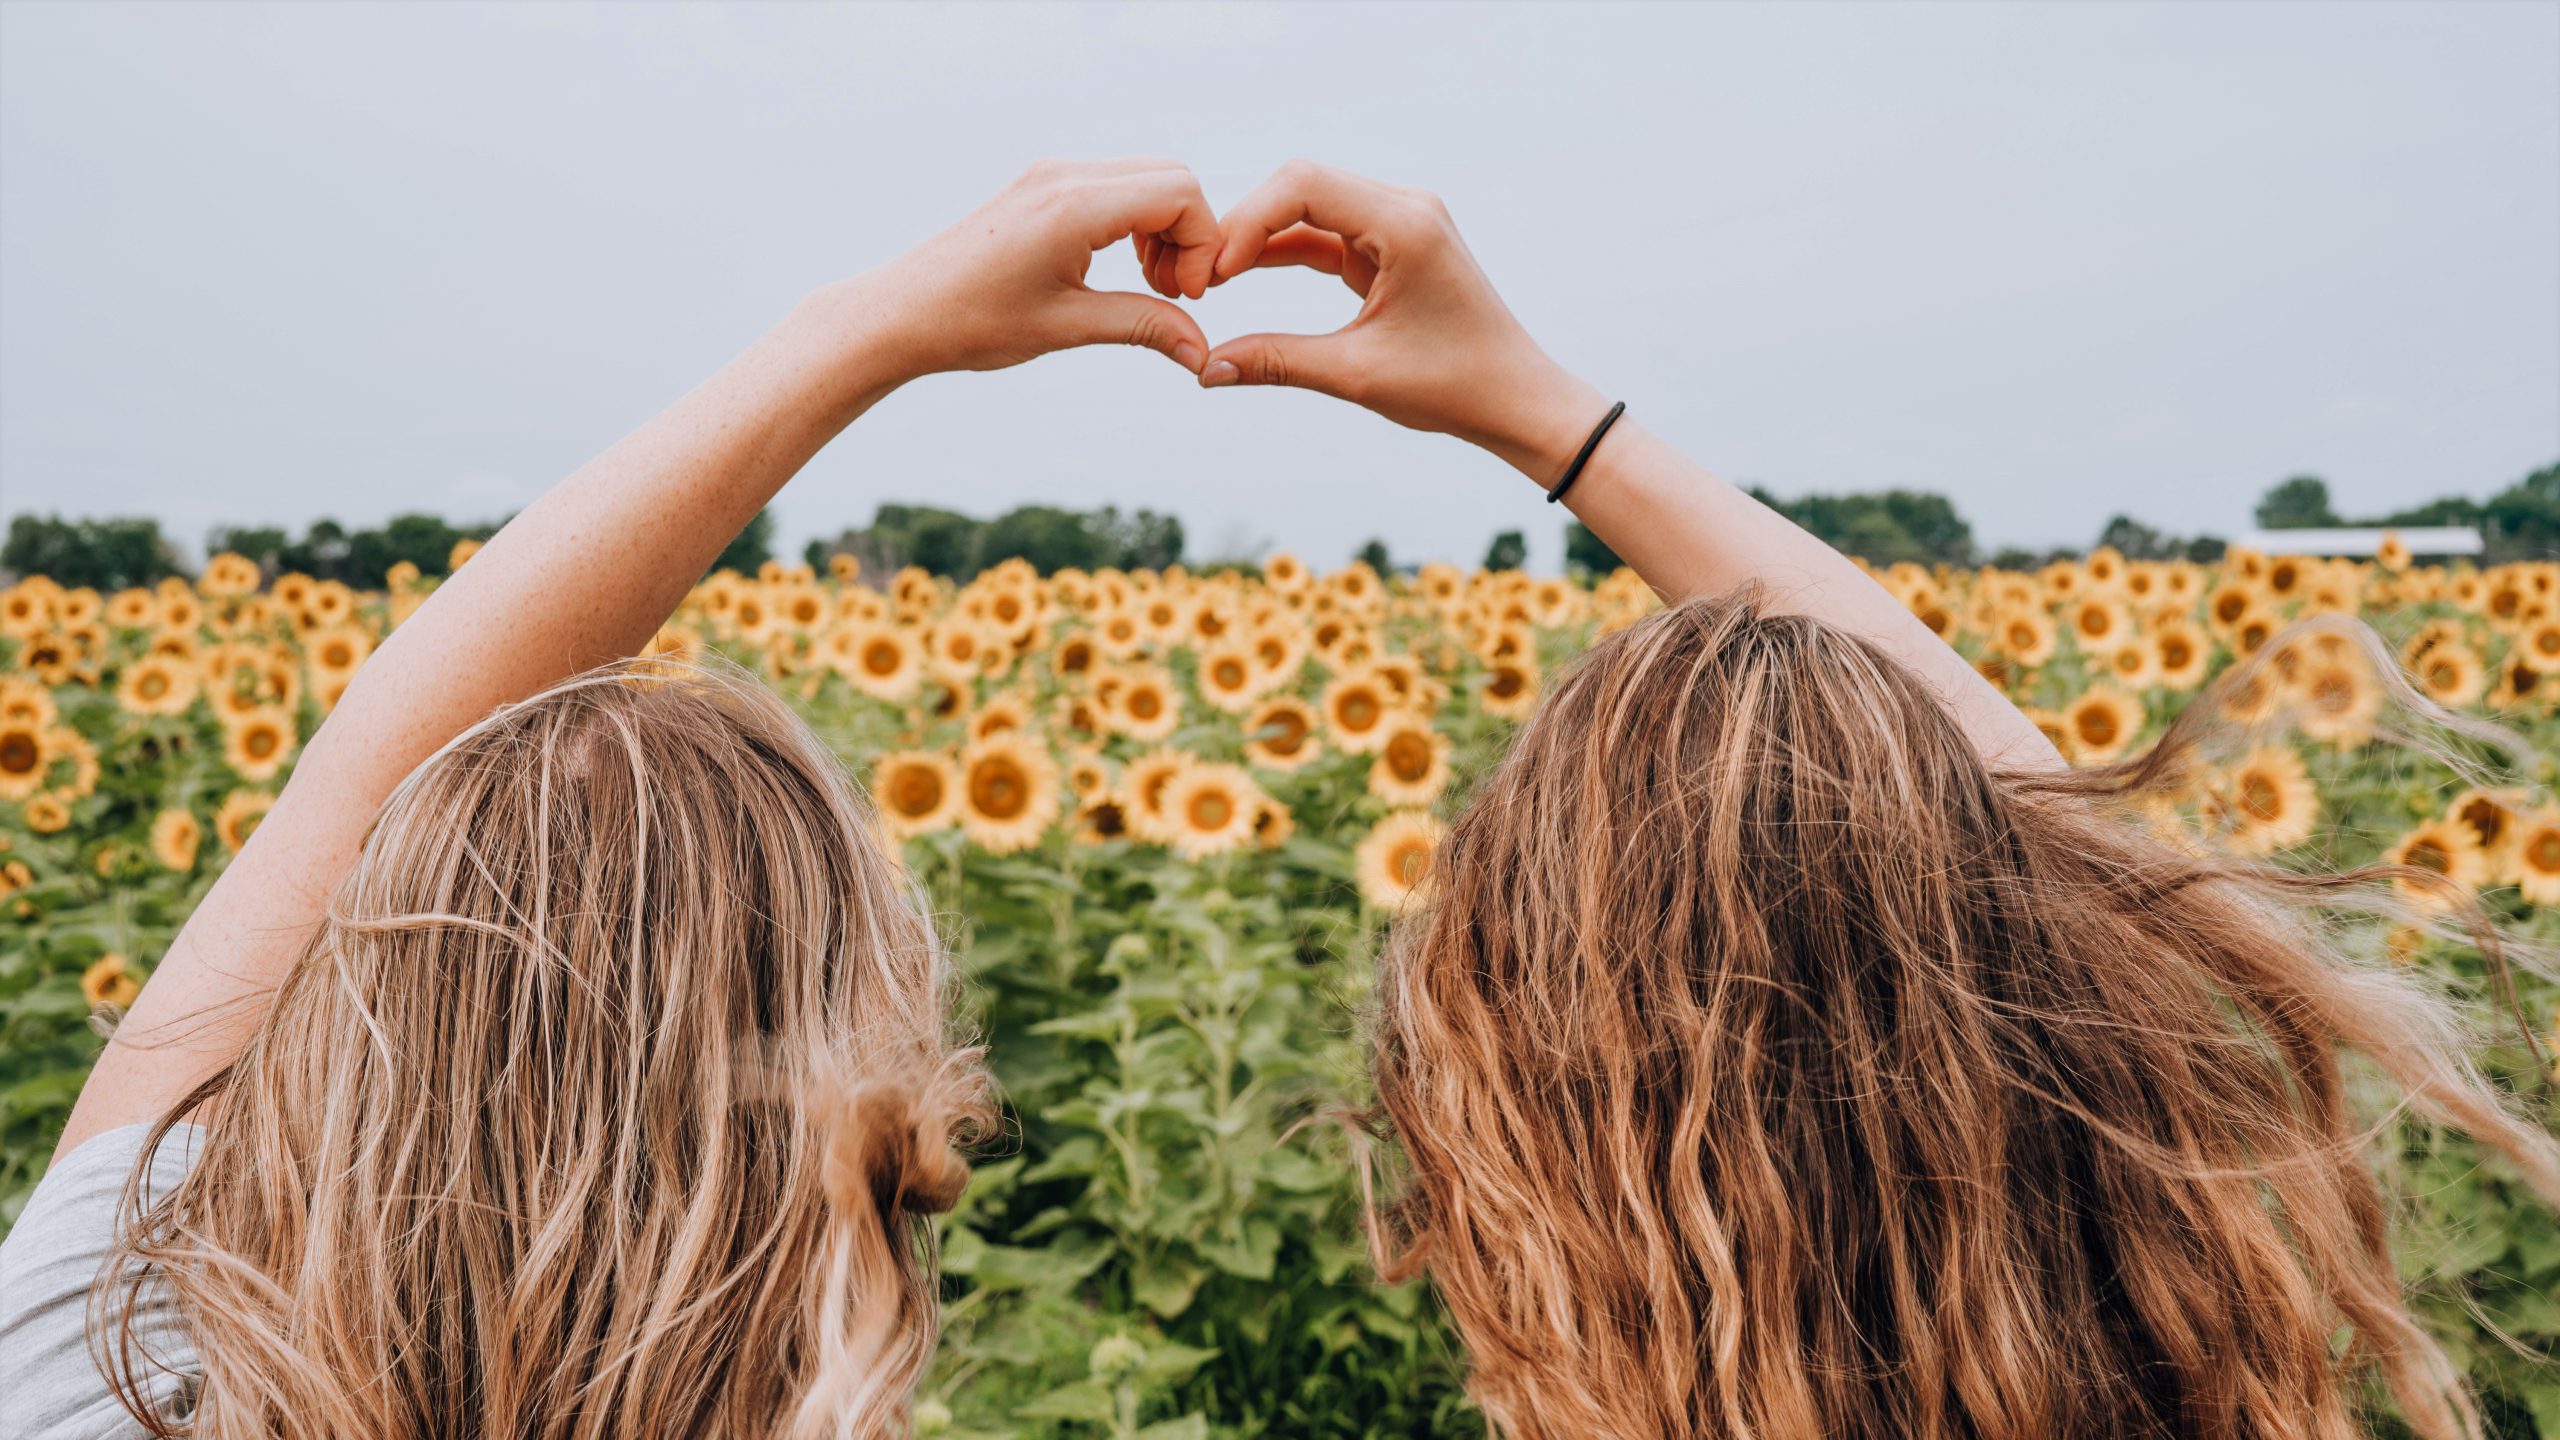 girls sitting next to sunflowers